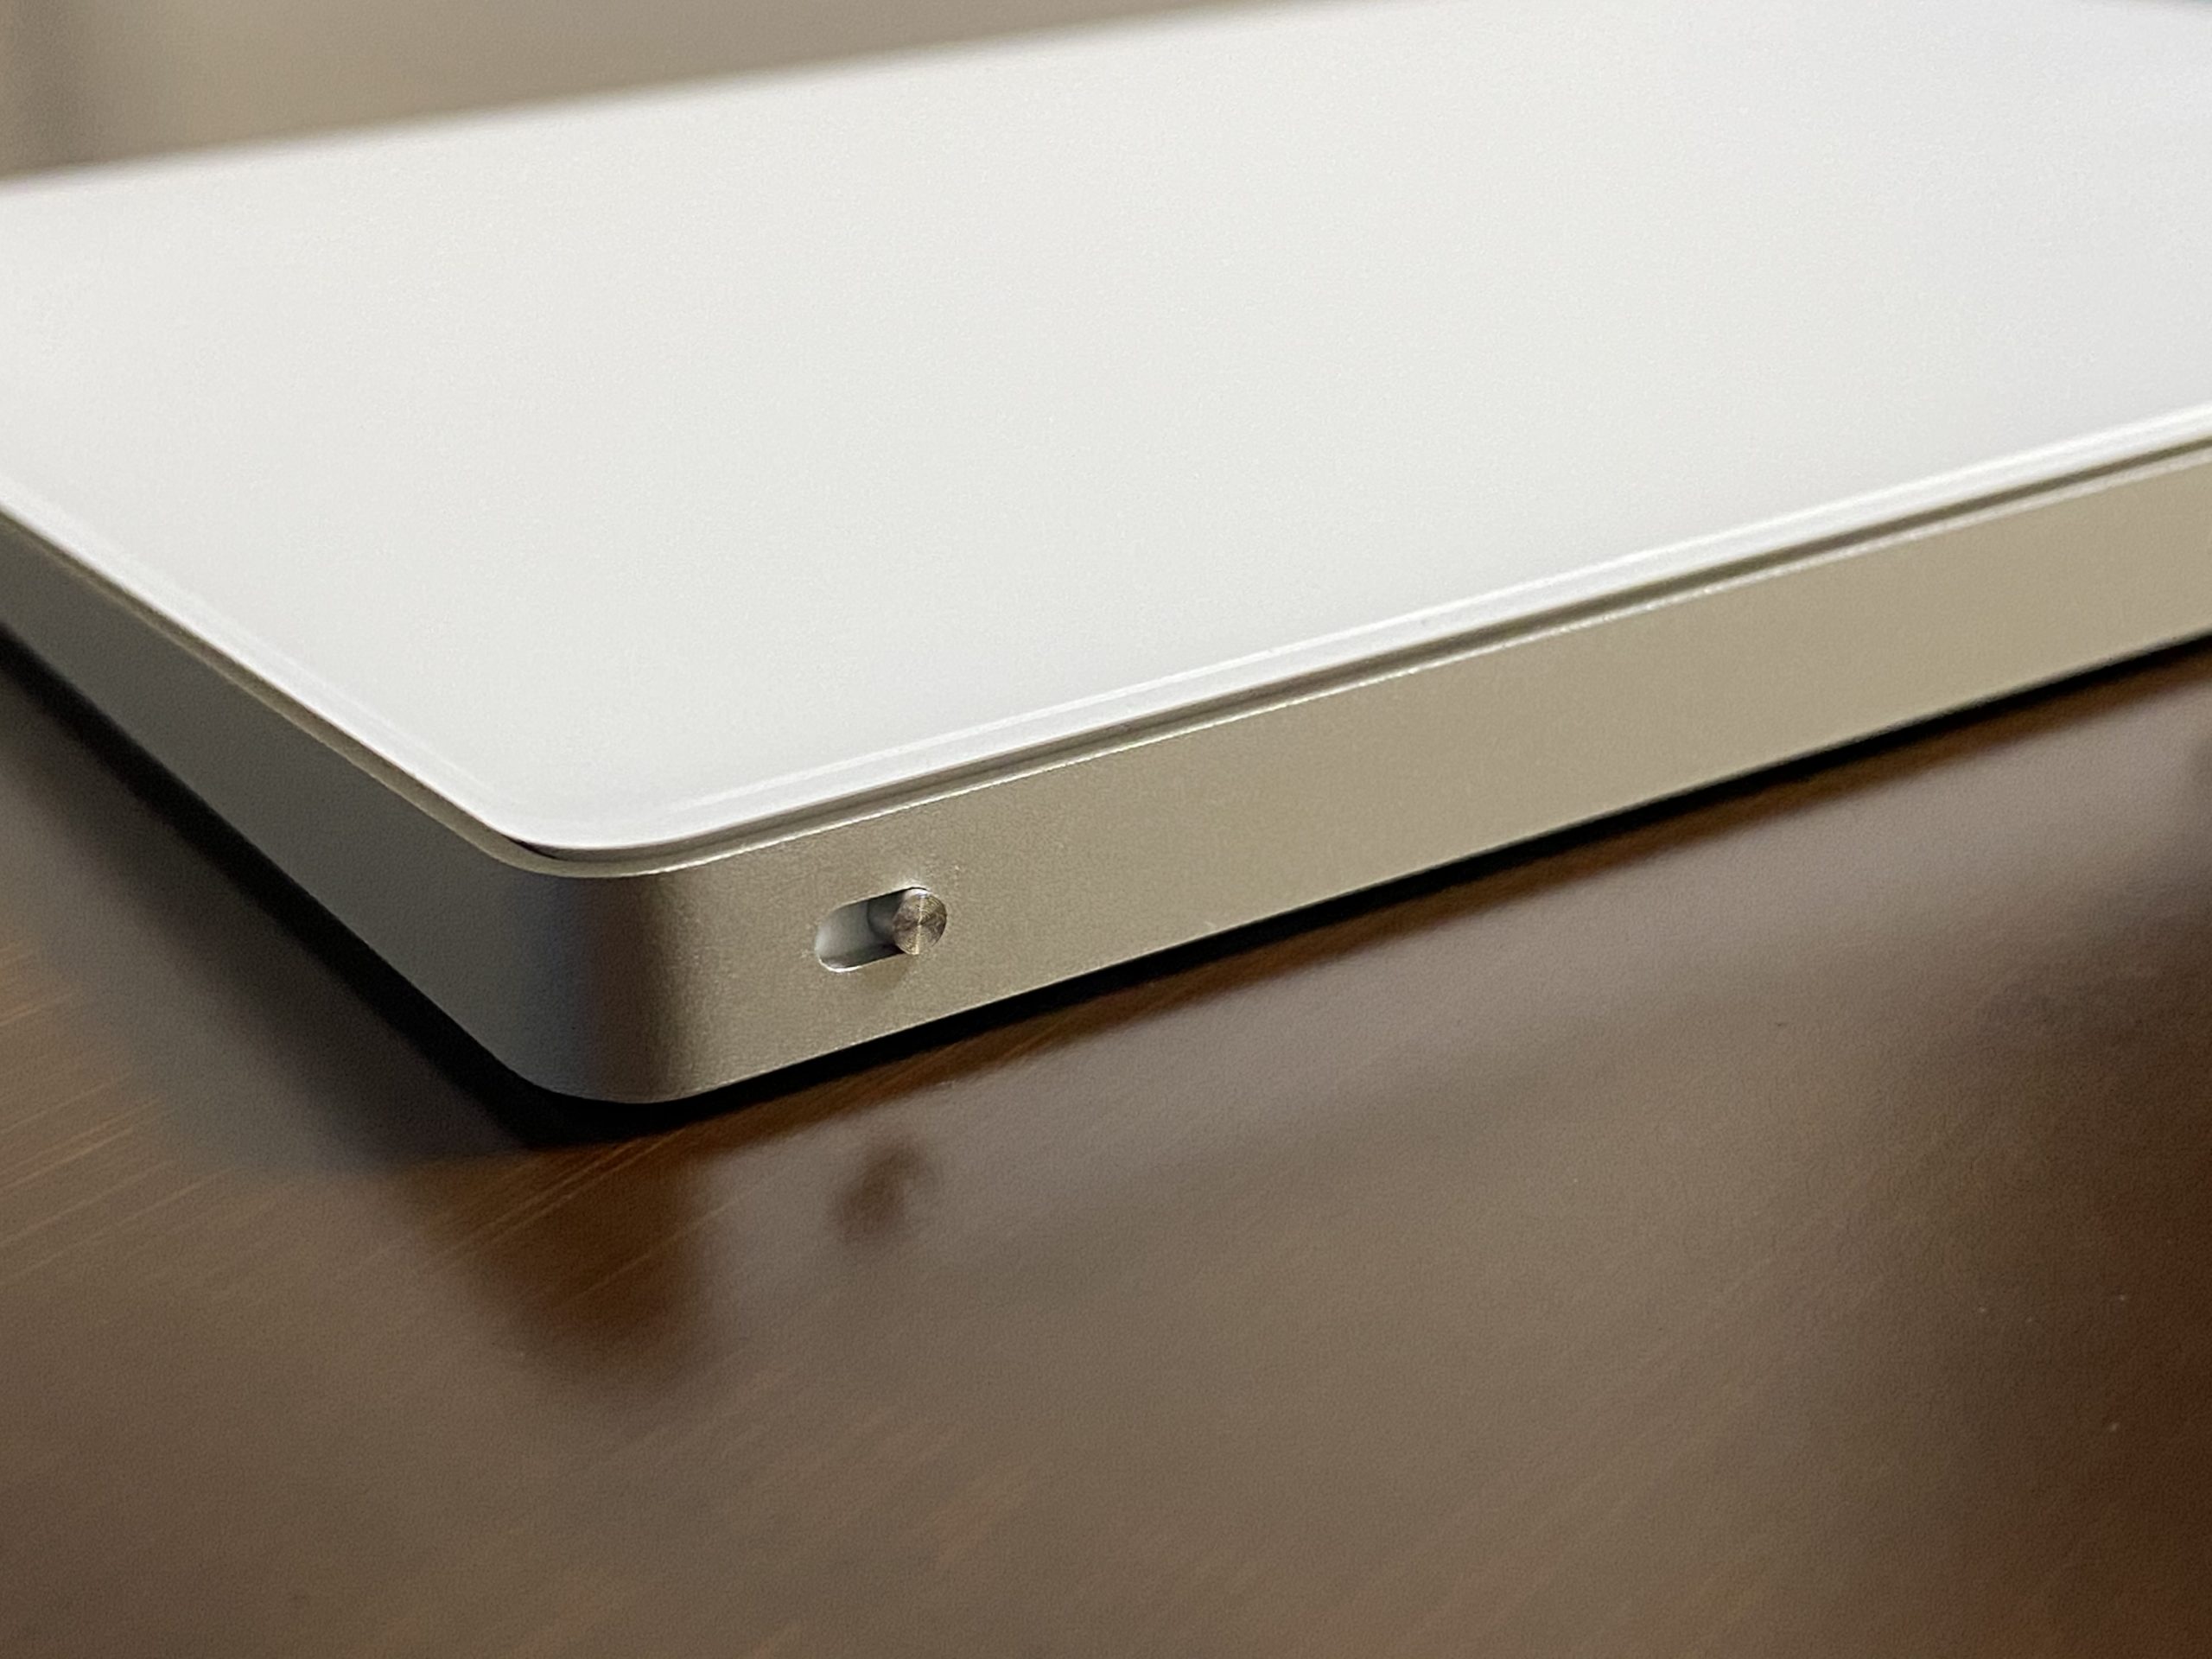 PC/タブレット PC周辺機器 在宅勤務での狭いデスクの救世主 「Apple Magic Trackpad 2」購入 